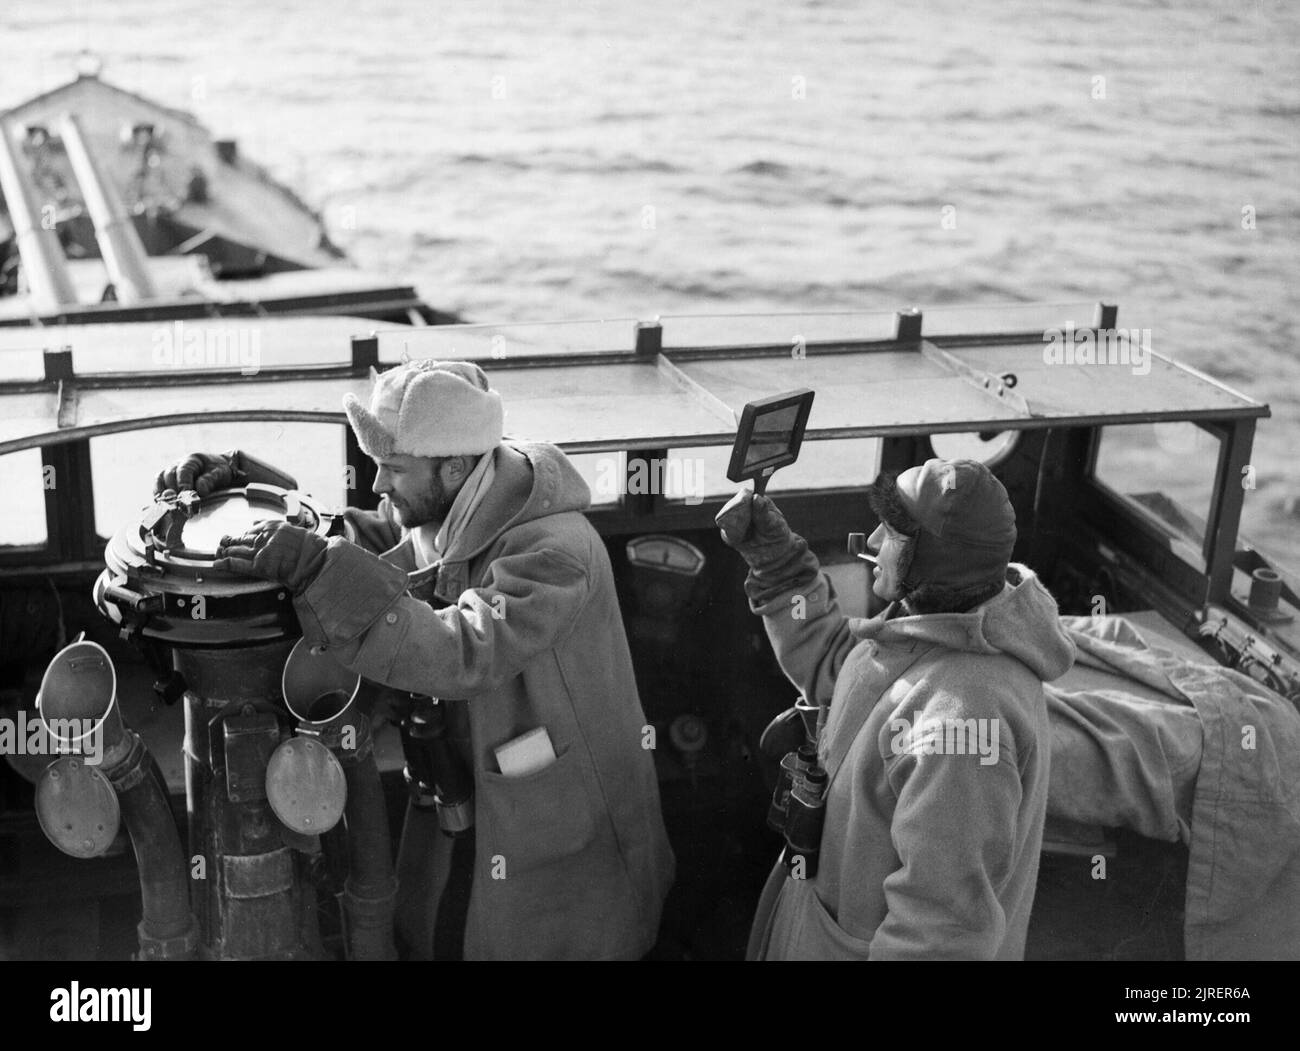 Die Offiziere auf der Brücke von HMS LEGION während des Überfalls auf den Lofoten in Norwegen, 5. März 1941. Der erste Lieutenant der Zerstörer HMS LEGION, Lieutenant Cartwright, nimmt ein Lager, während der Captain, Commander Jessel, schauen hält für feindliche Flugzeuge, wie das Schiff im Westen Fjord bei einer Razzia auf den Lofoten verlässt. Beide Männer sind mit dicken Winterkleidung und Jessel ist mit einem Getönte einige der Blendung der Sonne zu blockieren. Stockfoto